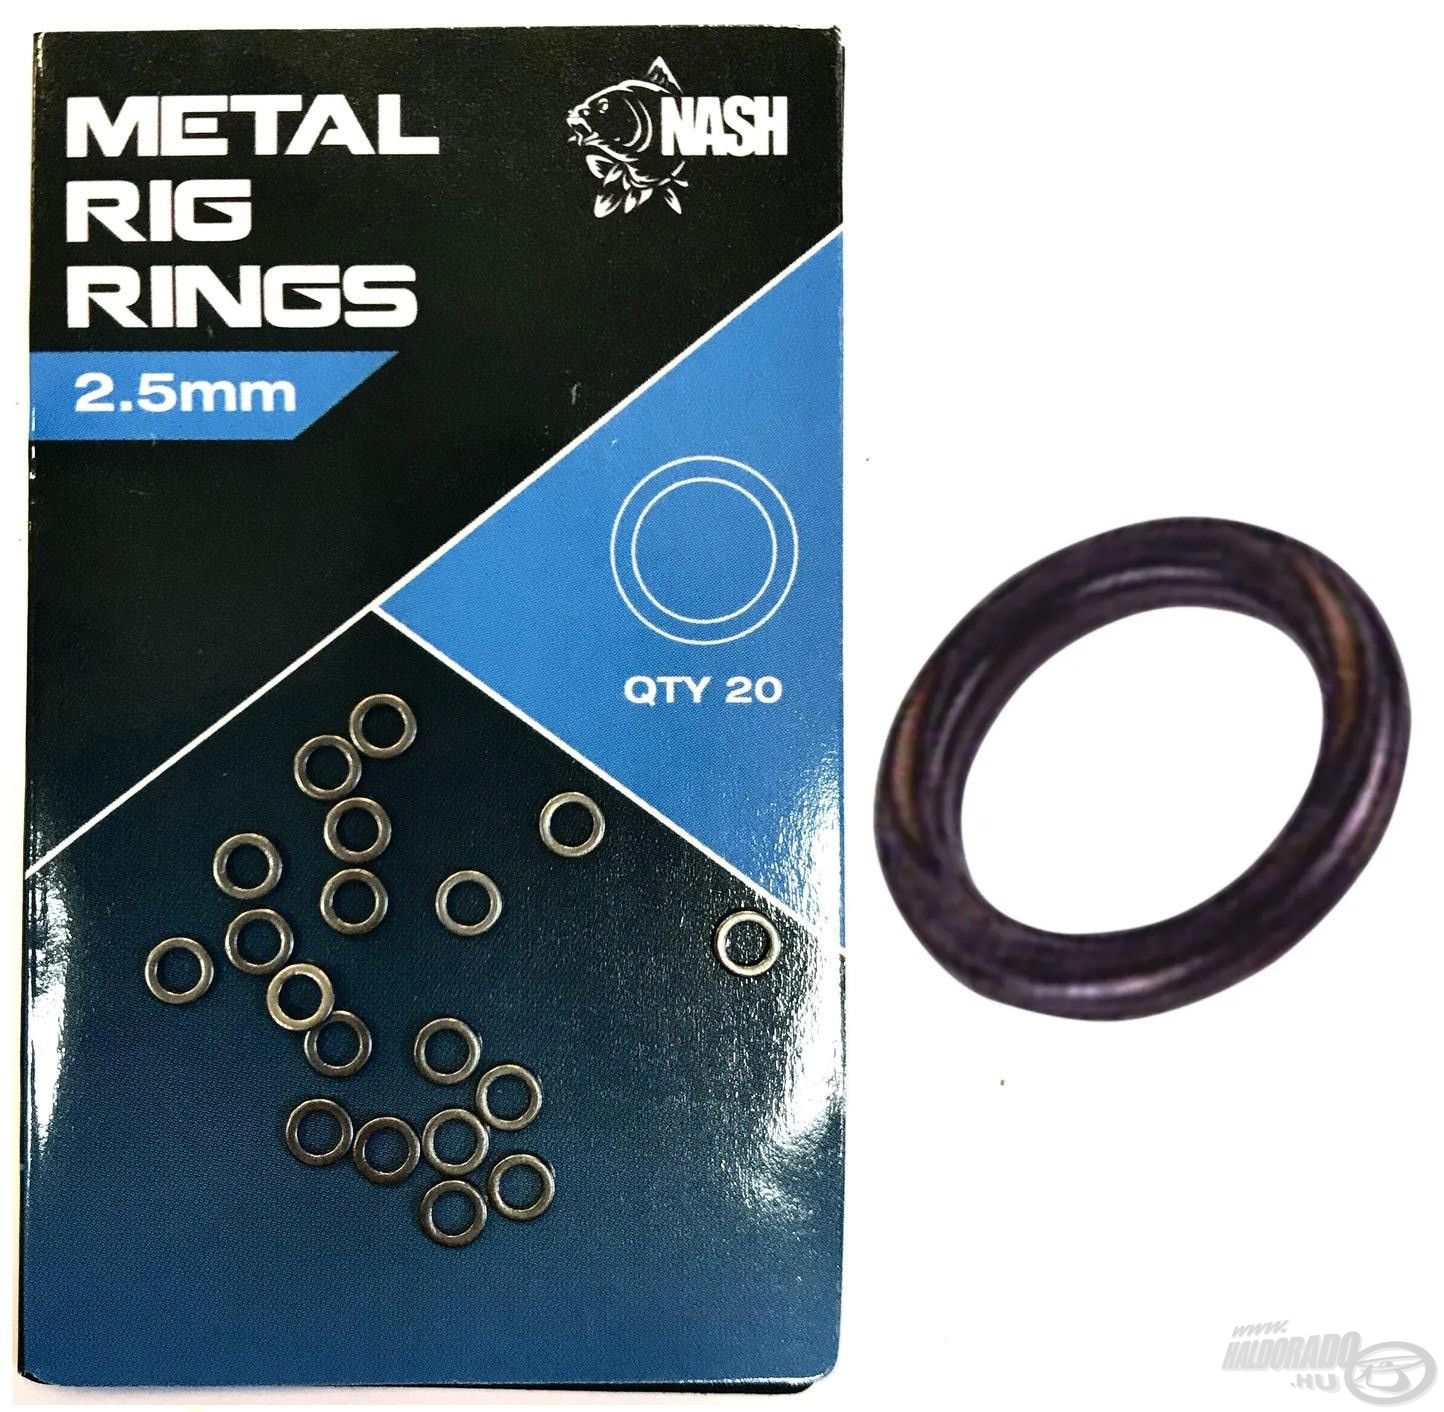 A Nash Metal Rig Ring egy speciális fémkarika, melynek különleges bevonata révén csekély a víz alatti csillogása, ezáltal hozzájárul a szerelék rejtettségéhez